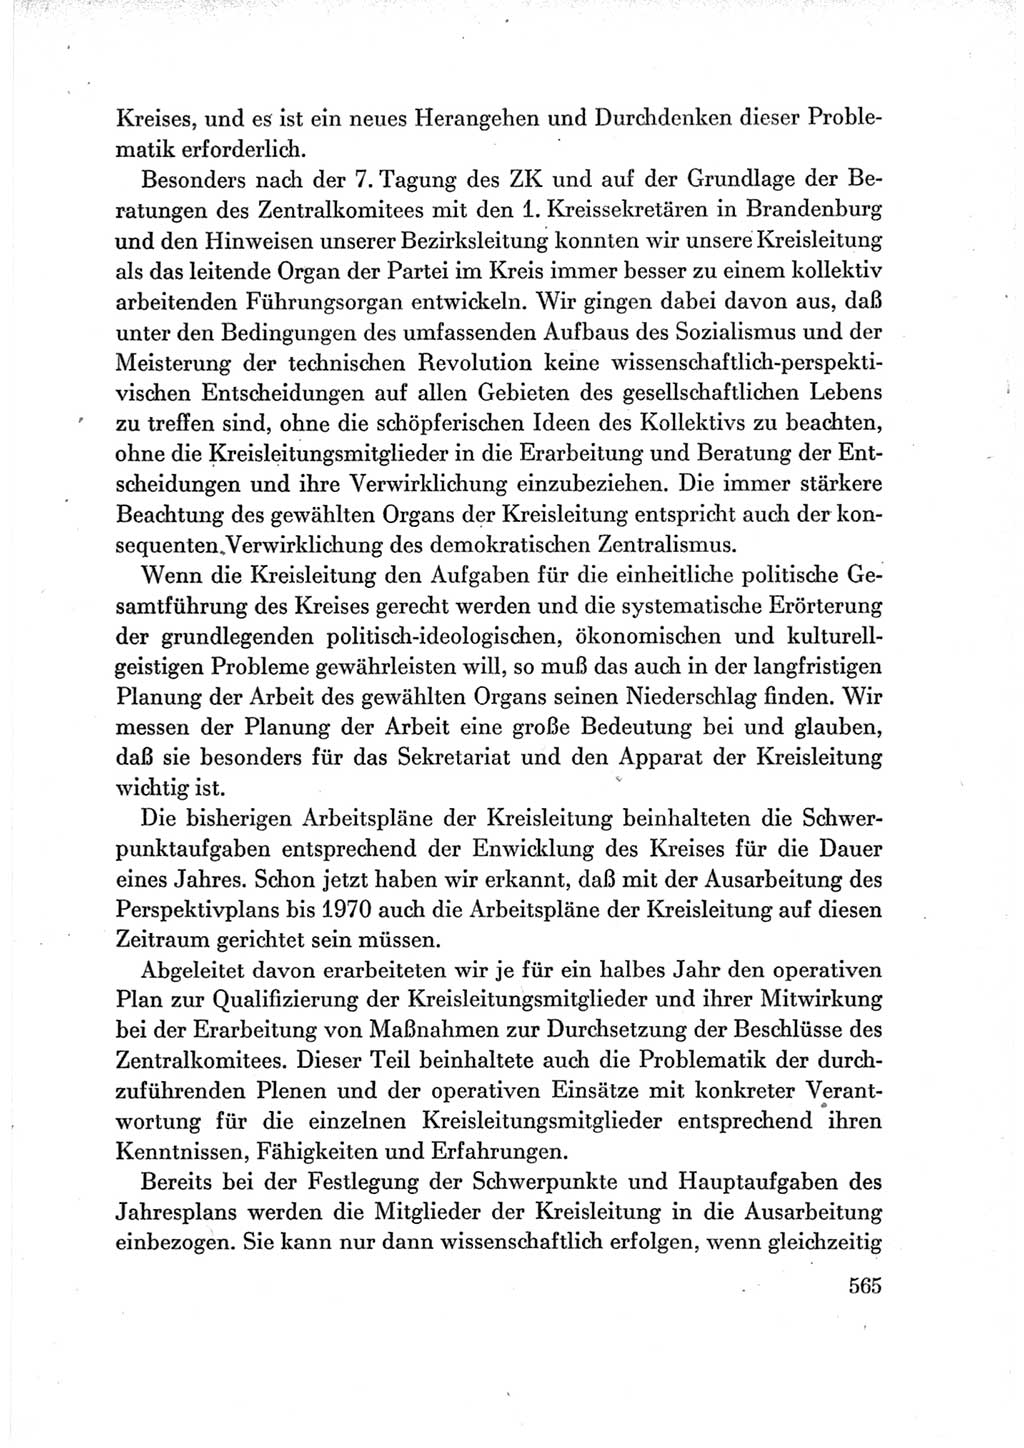 Protokoll der Verhandlungen des Ⅶ. Parteitages der Sozialistischen Einheitspartei Deutschlands (SED) [Deutsche Demokratische Republik (DDR)] 1967, Band Ⅲ, Seite 565 (Prot. Verh. Ⅶ. PT SED DDR 1967, Bd. Ⅲ, S. 565)